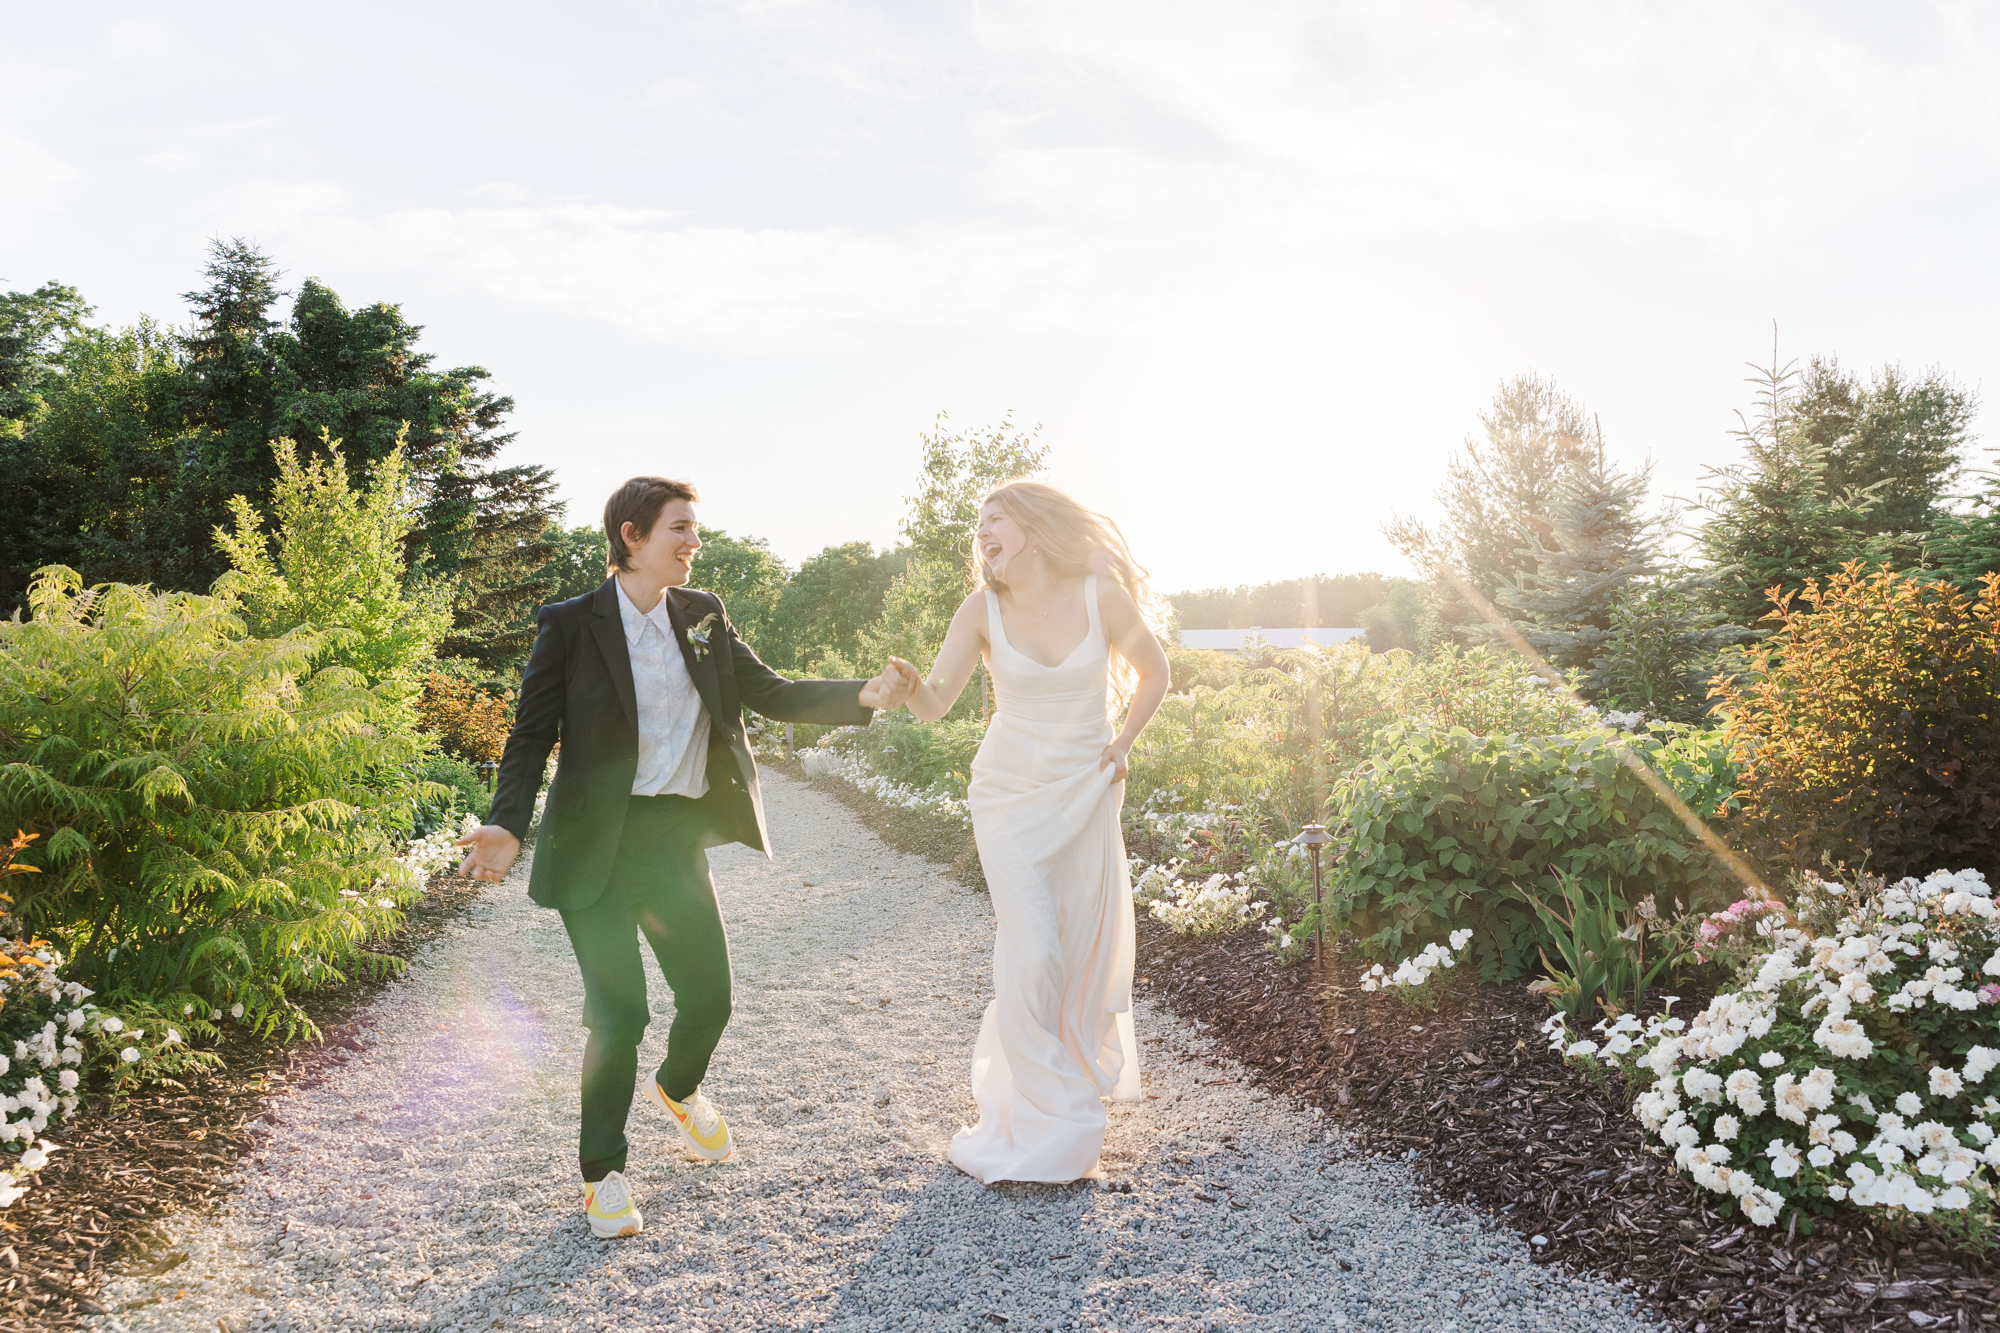 Beautiful Wedding at Maple Meadows Farm, Canada